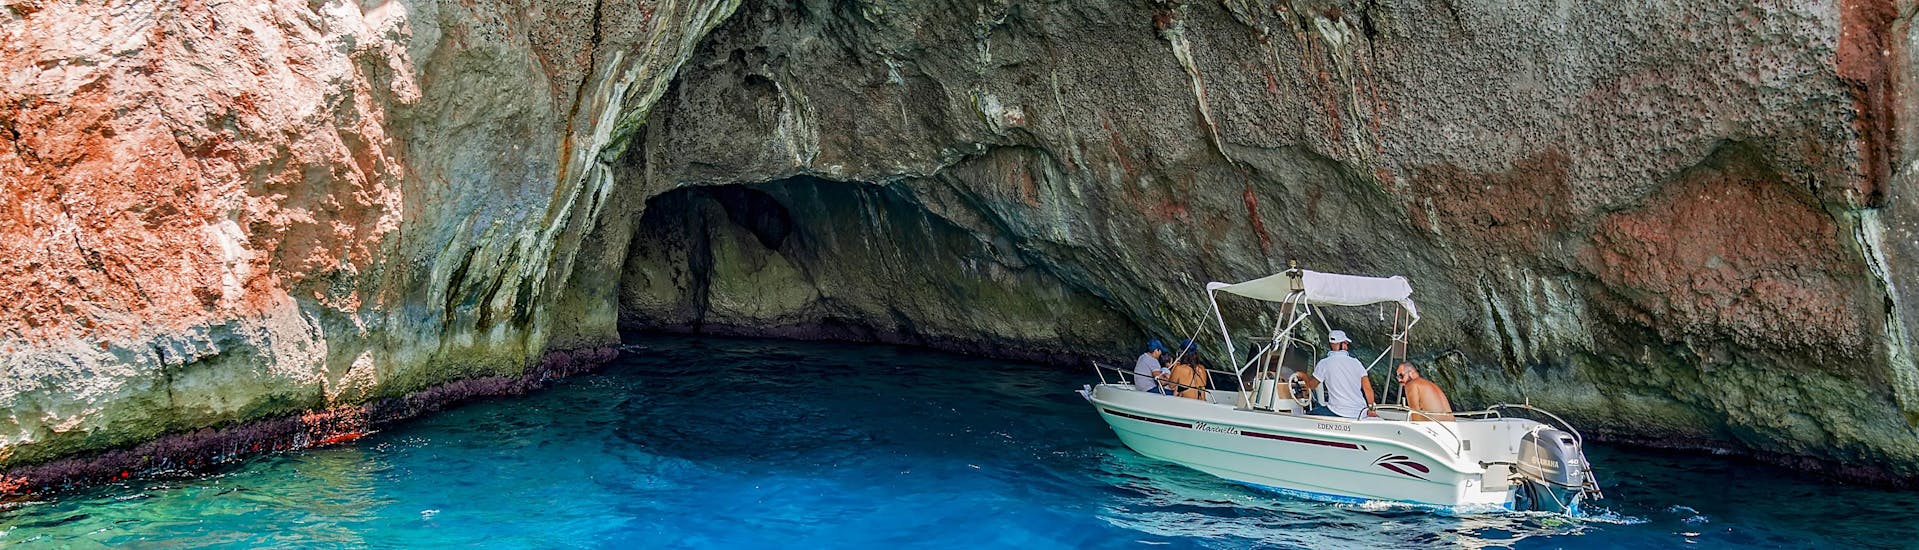 Eine Freundesgruppe macht eine Bootstour in der Urlaubsregion Blaue Grotte.